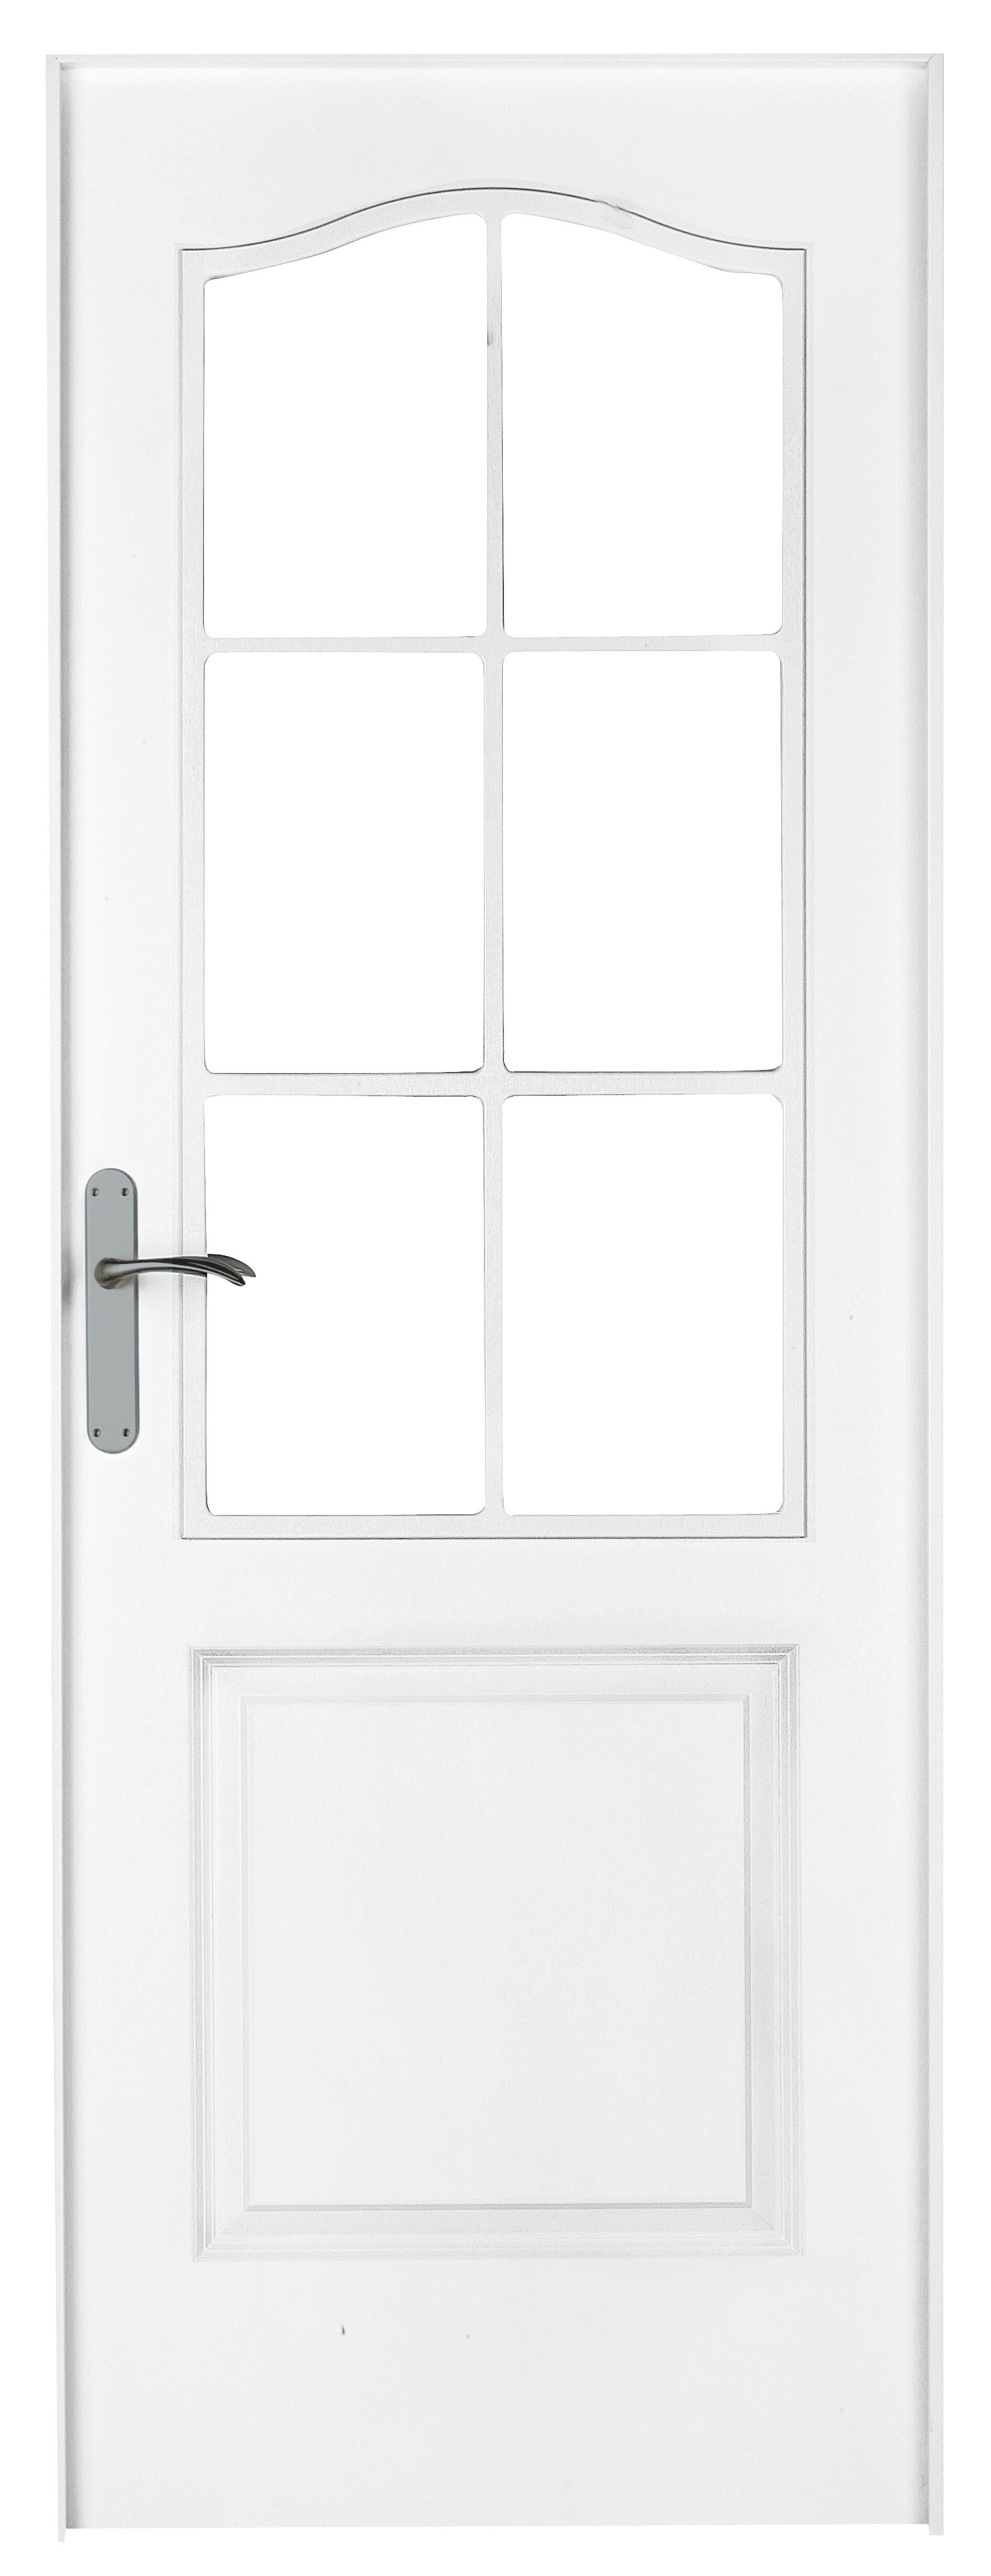 Puerta abatible bonn blanca aero blanco derecha con cristal de 110x30 y 72.5cm